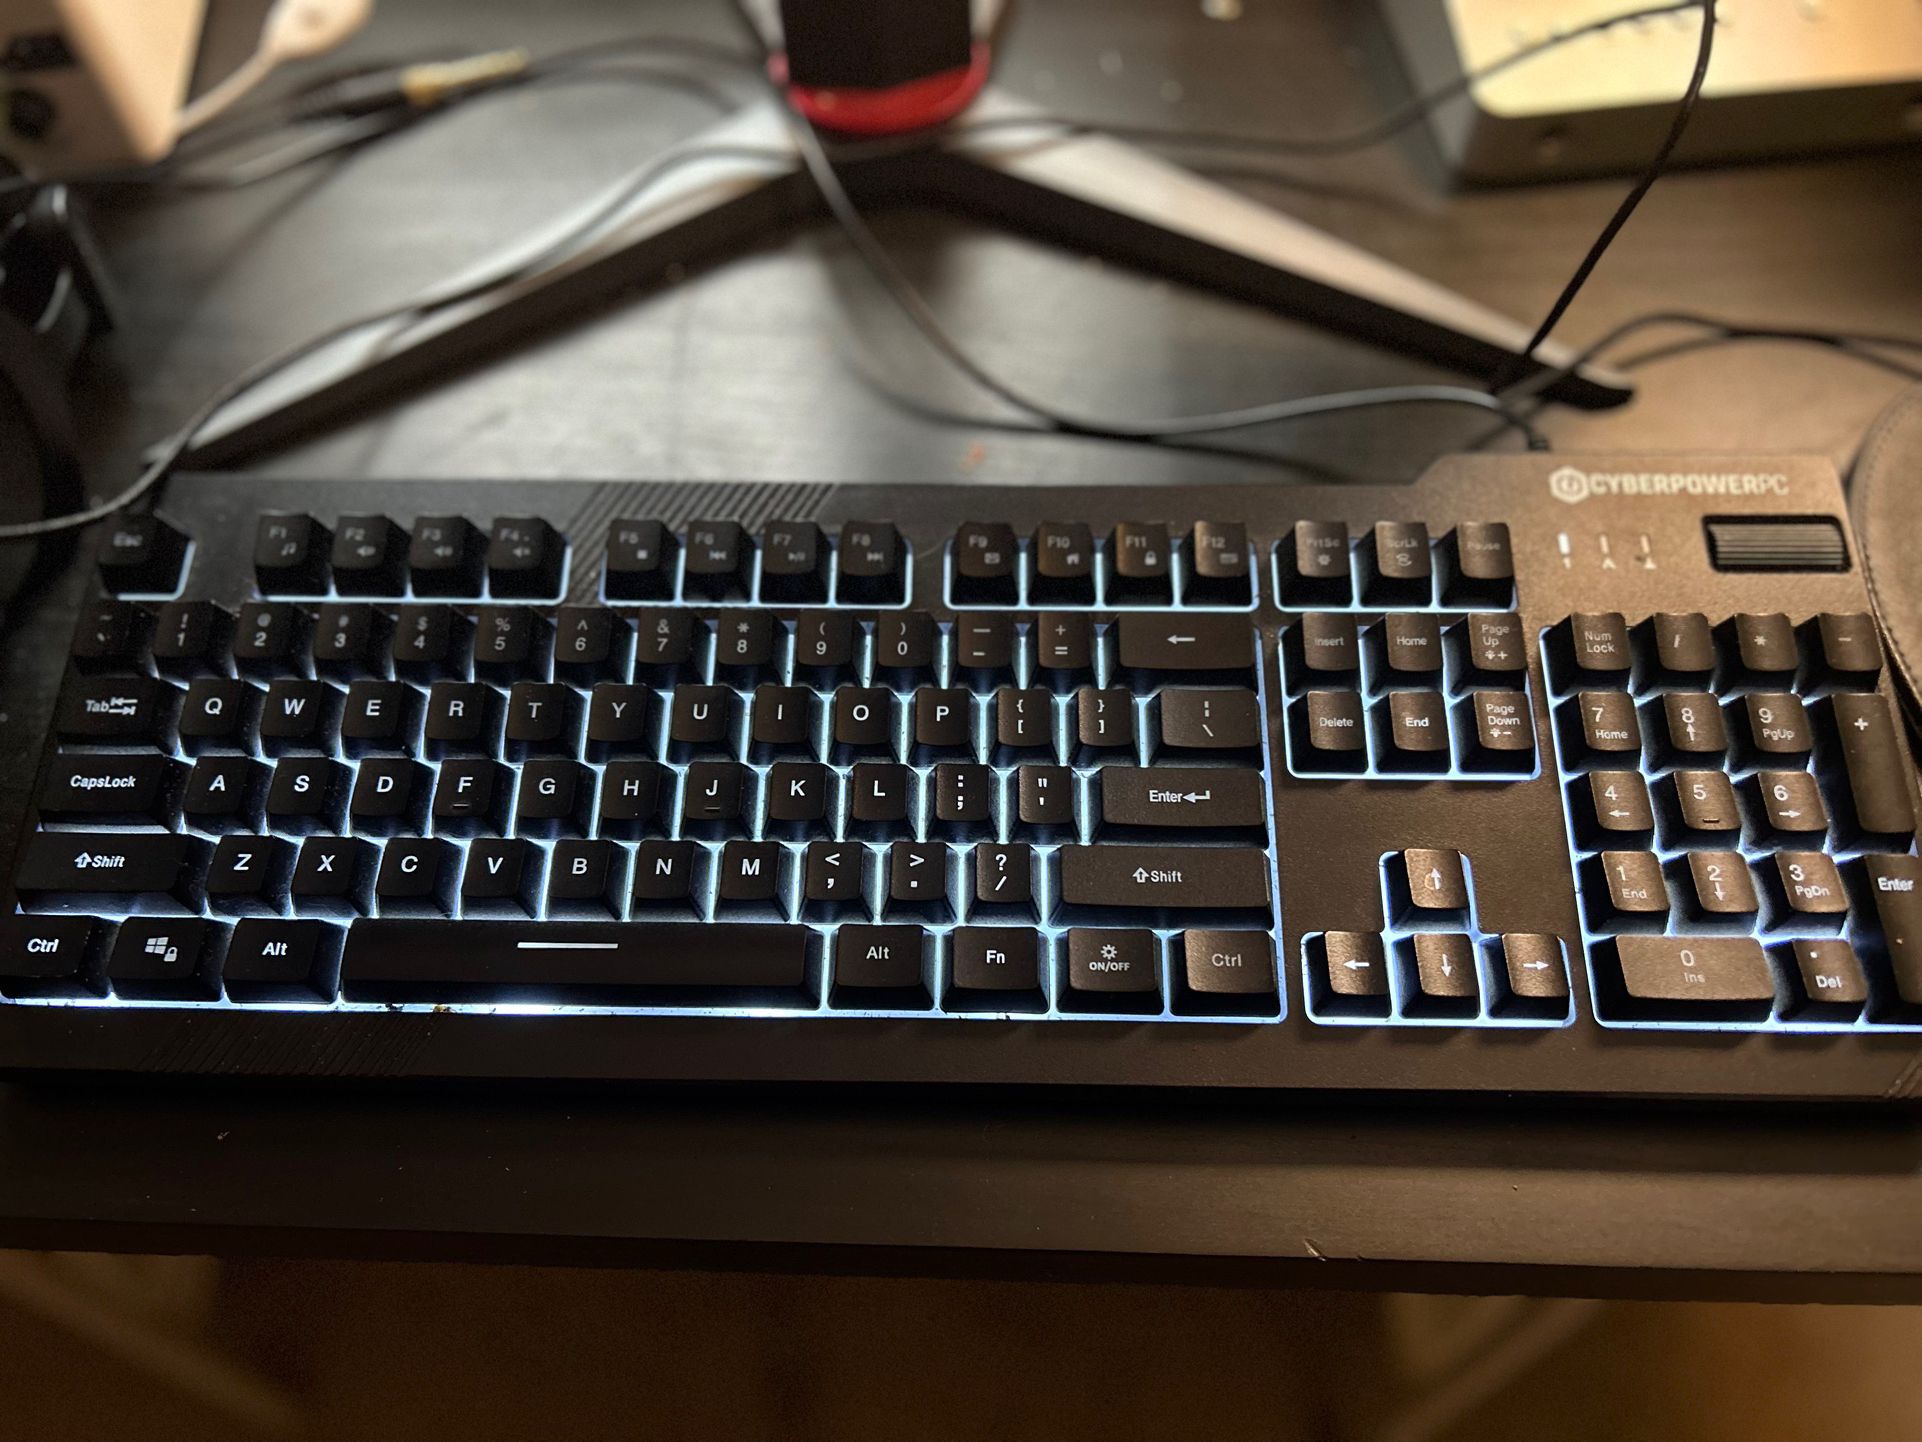 Cyberpower Keyboard